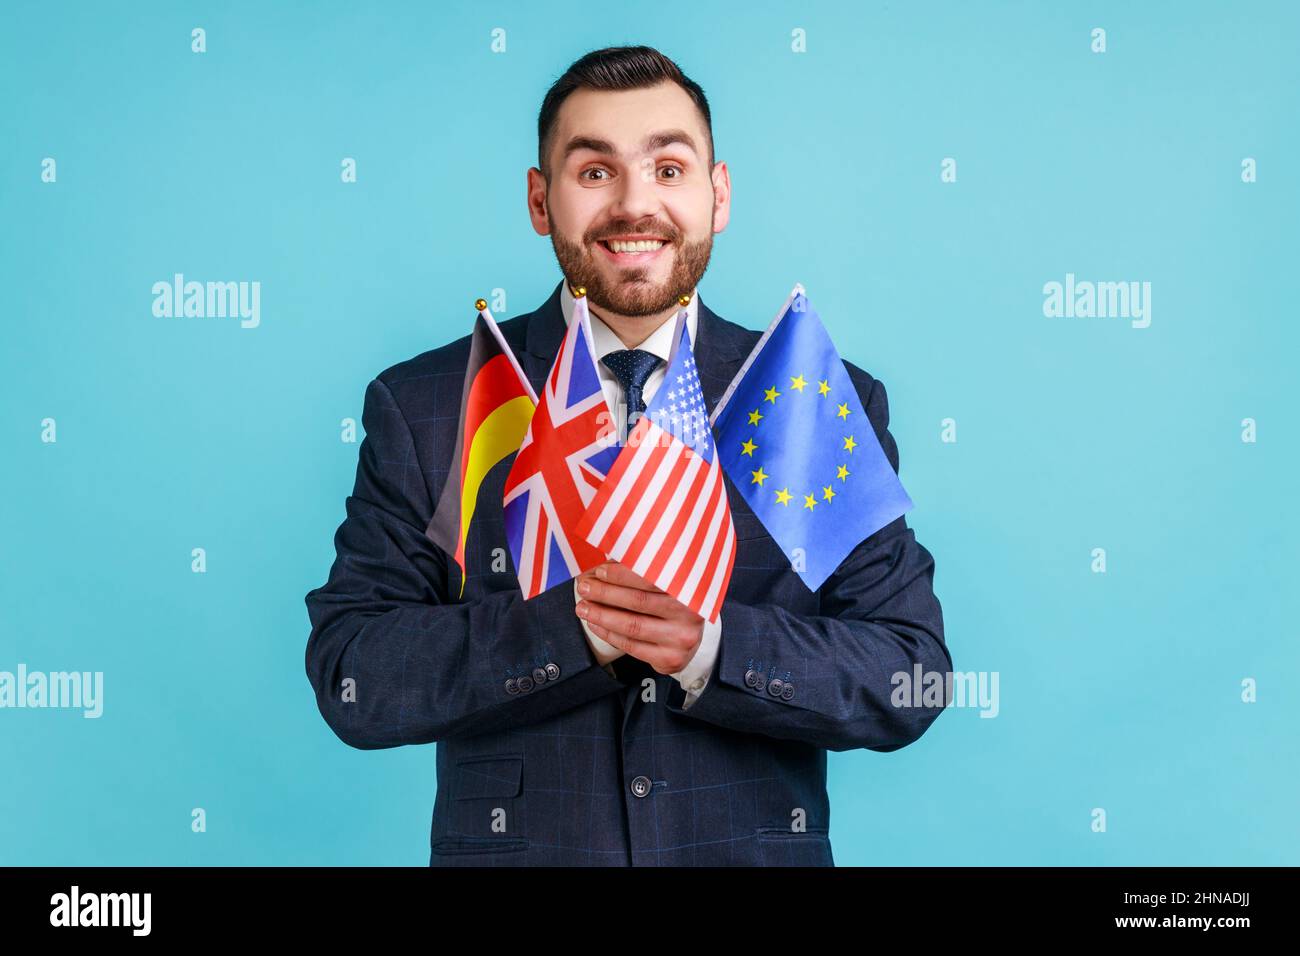 Positiver Mann mit Bart, der einen Anzug im offiziellen Stil trägt, der Flaggen verschiedener Länder hält, Sprachen lernt, die Kamera mit einem toothy Lächeln anschaut. Innenaufnahme des Studios isoliert auf blauem Hintergrund. Stockfoto